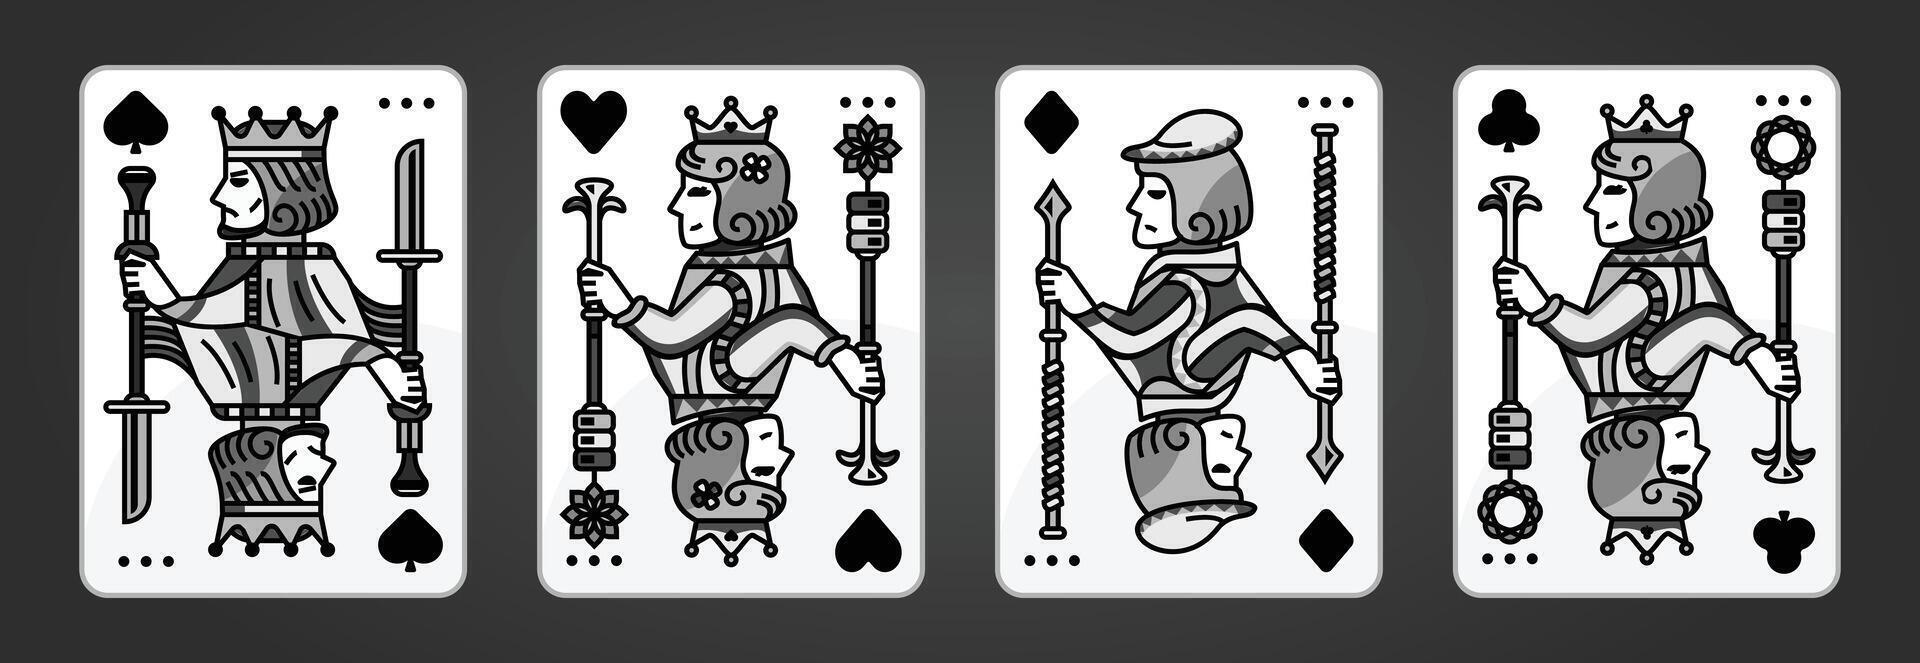 koning en koningin kaart illustratie reeks van harten, spade, diamant en club, Koninklijk kaarten ontwerp verzameling vector